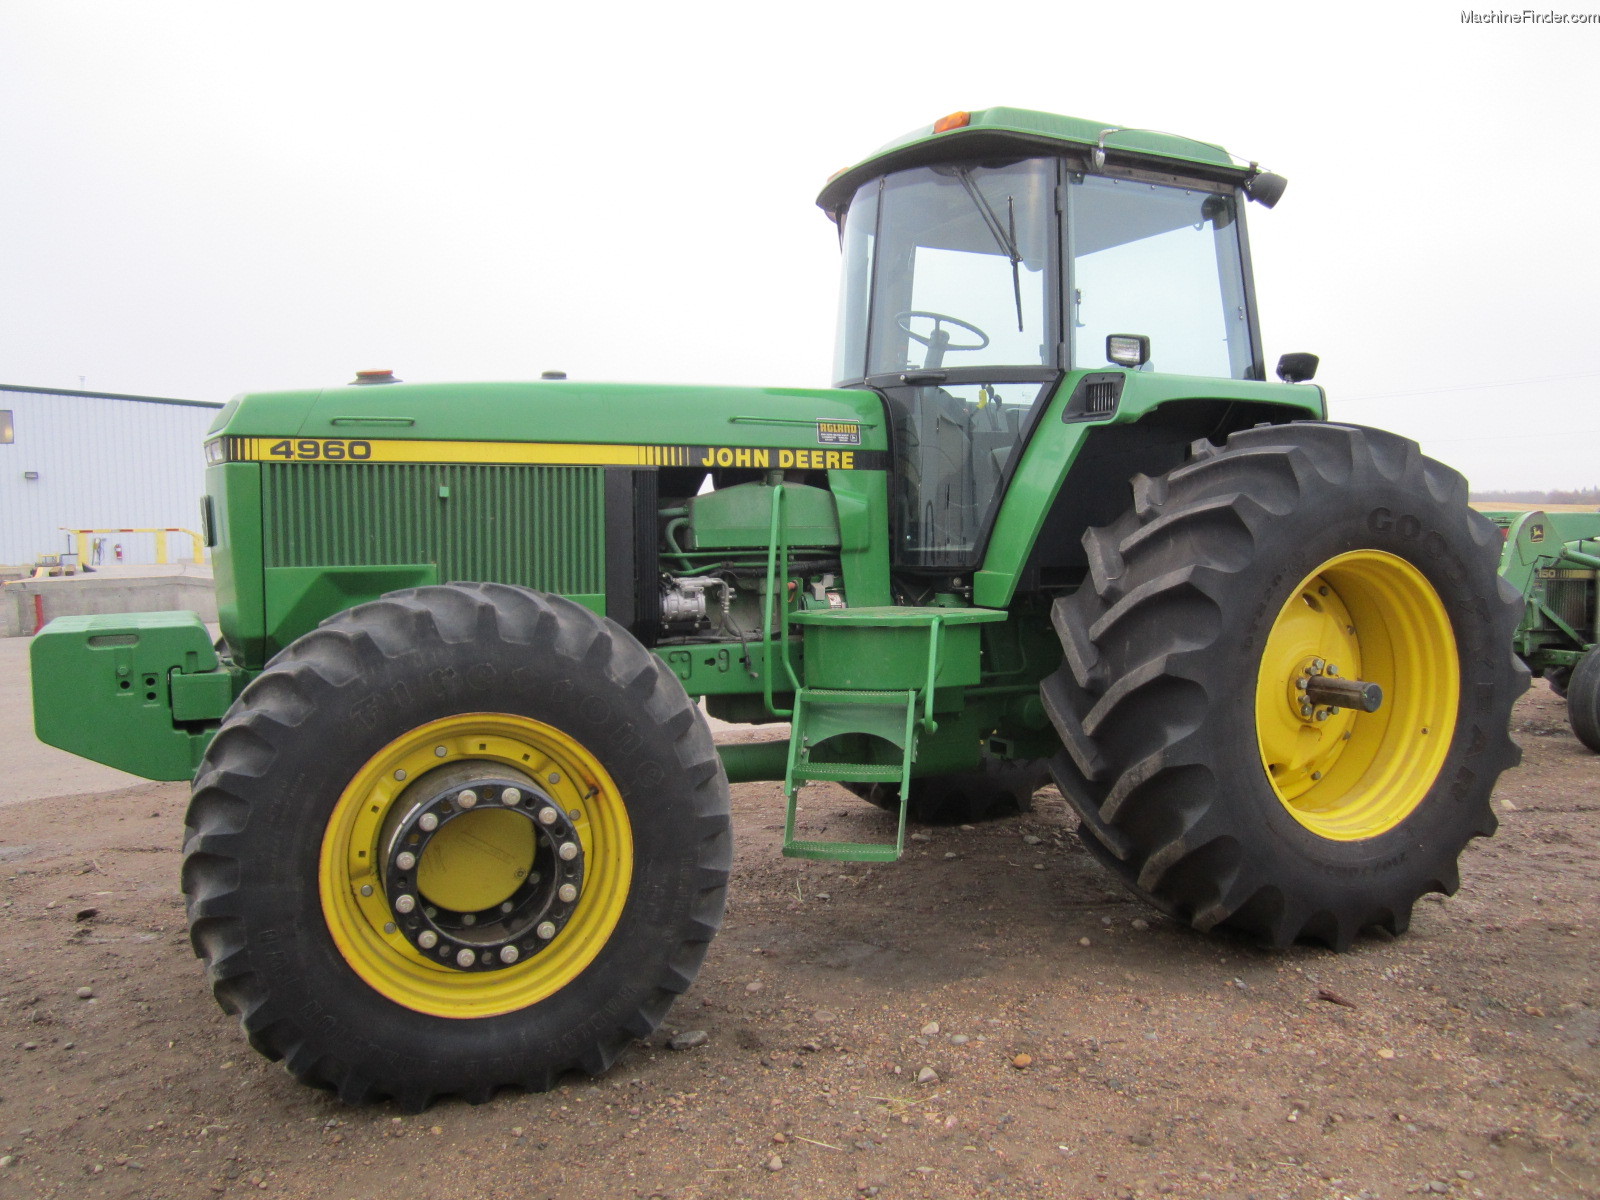 1994 John Deere 4960 Tractors - Row Crop (+100hp) - John Deere ...